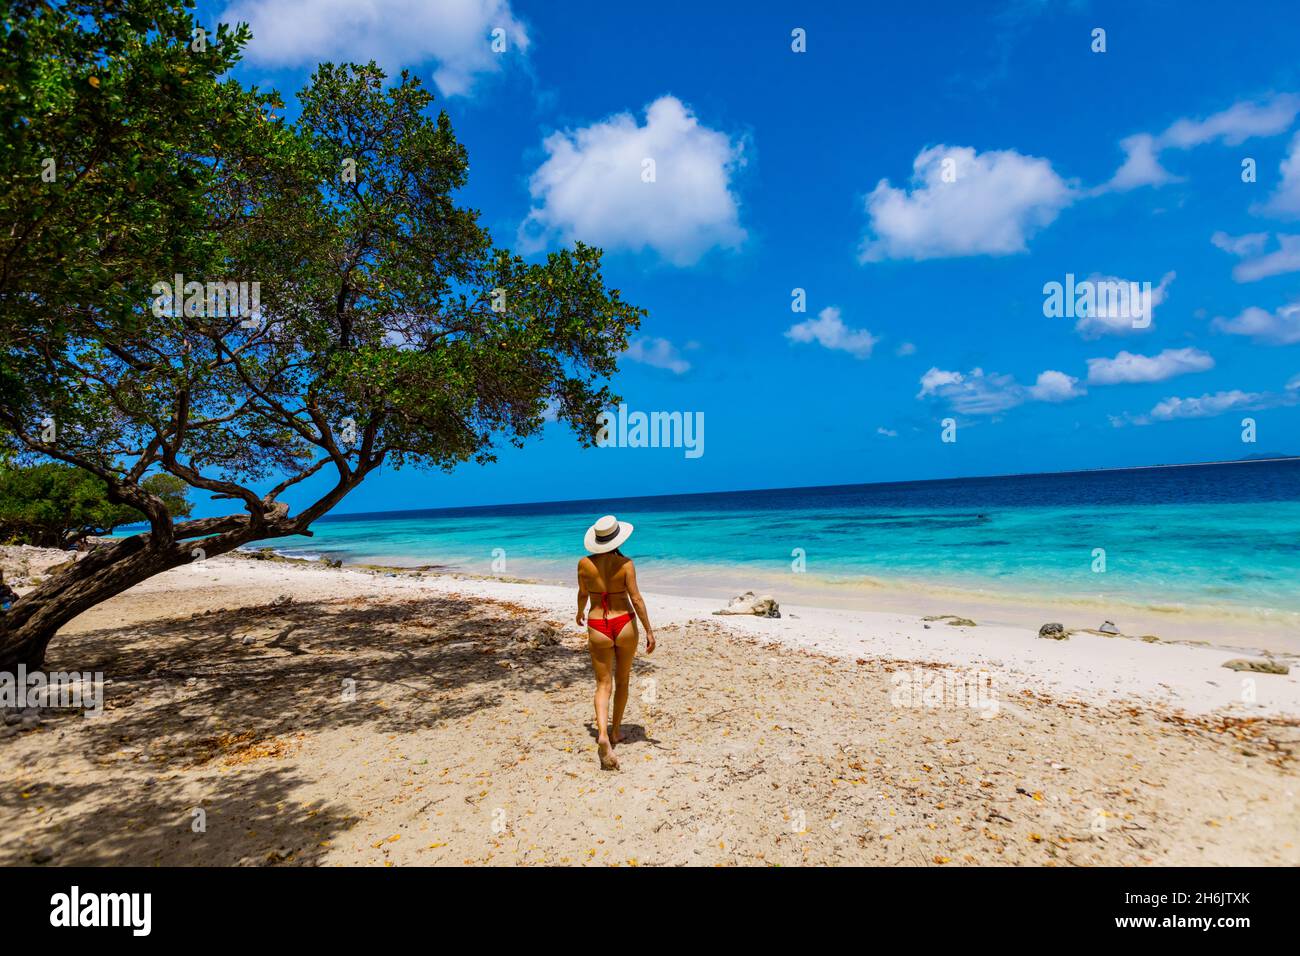 Femme appréciant les plages de sable blanc et les eaux bleues claires de Bonaire, Antilles néerlandaises, Caraïbes, Amérique centrale Banque D'Images